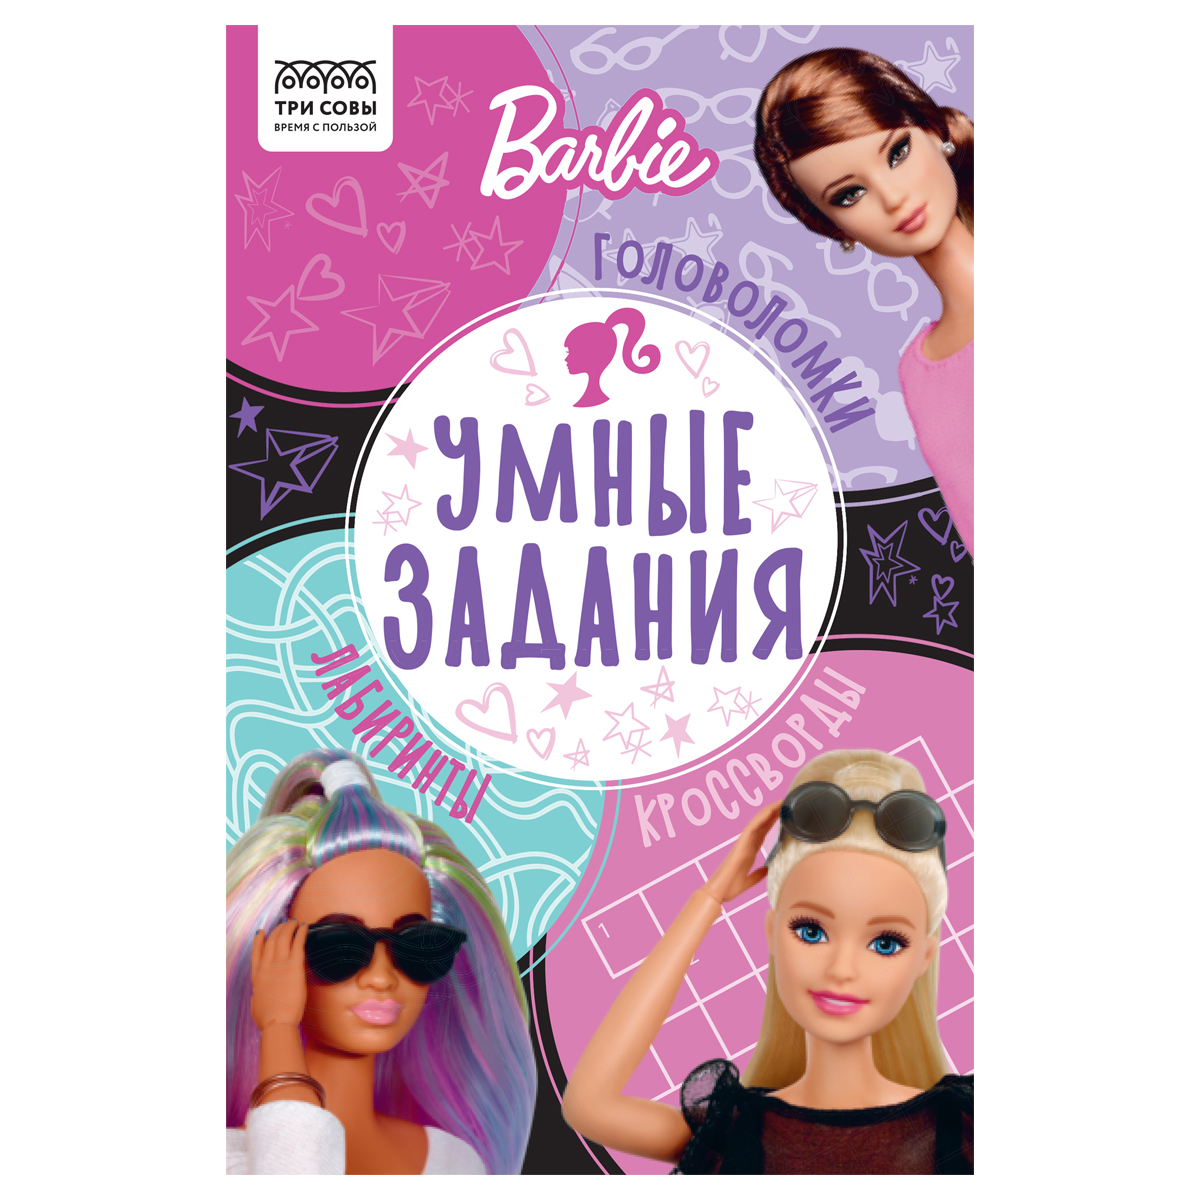 Раскраска А4 ТРИ СОВЫ "Барби", 8стр., с наклейками